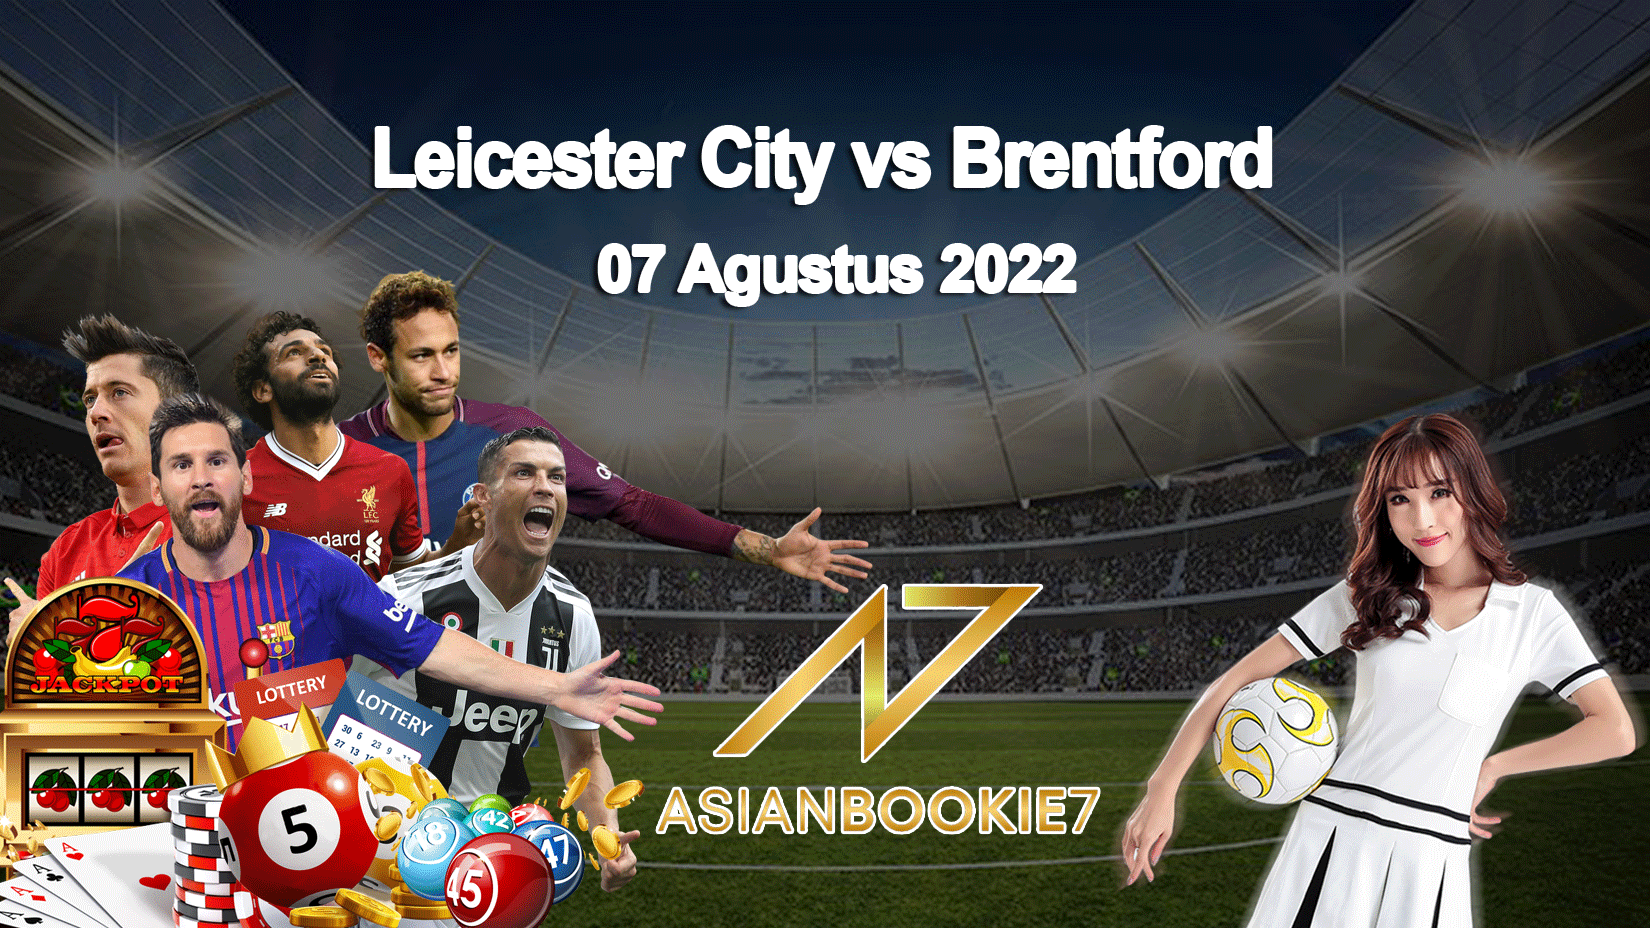 Prediksi Leicester City vs Brentford 07 Agustus 2022